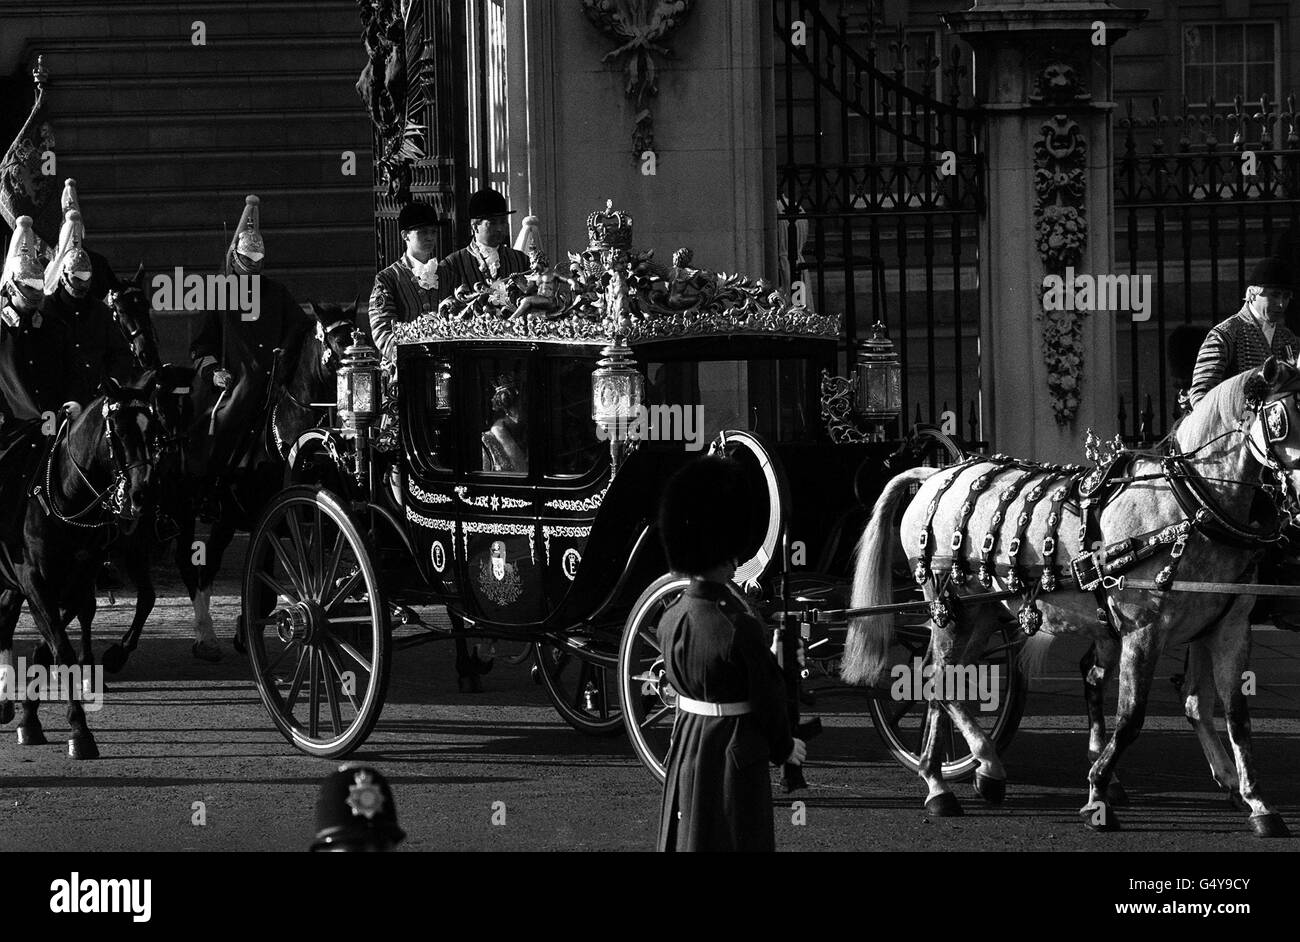 Le cadeau bicentenaire de l'Australie, le nouvel entraîneur d'État australien de 120,000, qui quitte le palais de Buckingham pour prendre la reine Elizabeth II et le duc d'Édimbourg à l'ouverture d'État du Parlement. L'entraîneur est le premier nouvel entraîneur de la famille royale depuis 1910. L'autocar a des fenêtres à commande électrique, et est le premier wagon royal à être construit en dehors de la Grande-Bretagne. Banque D'Images